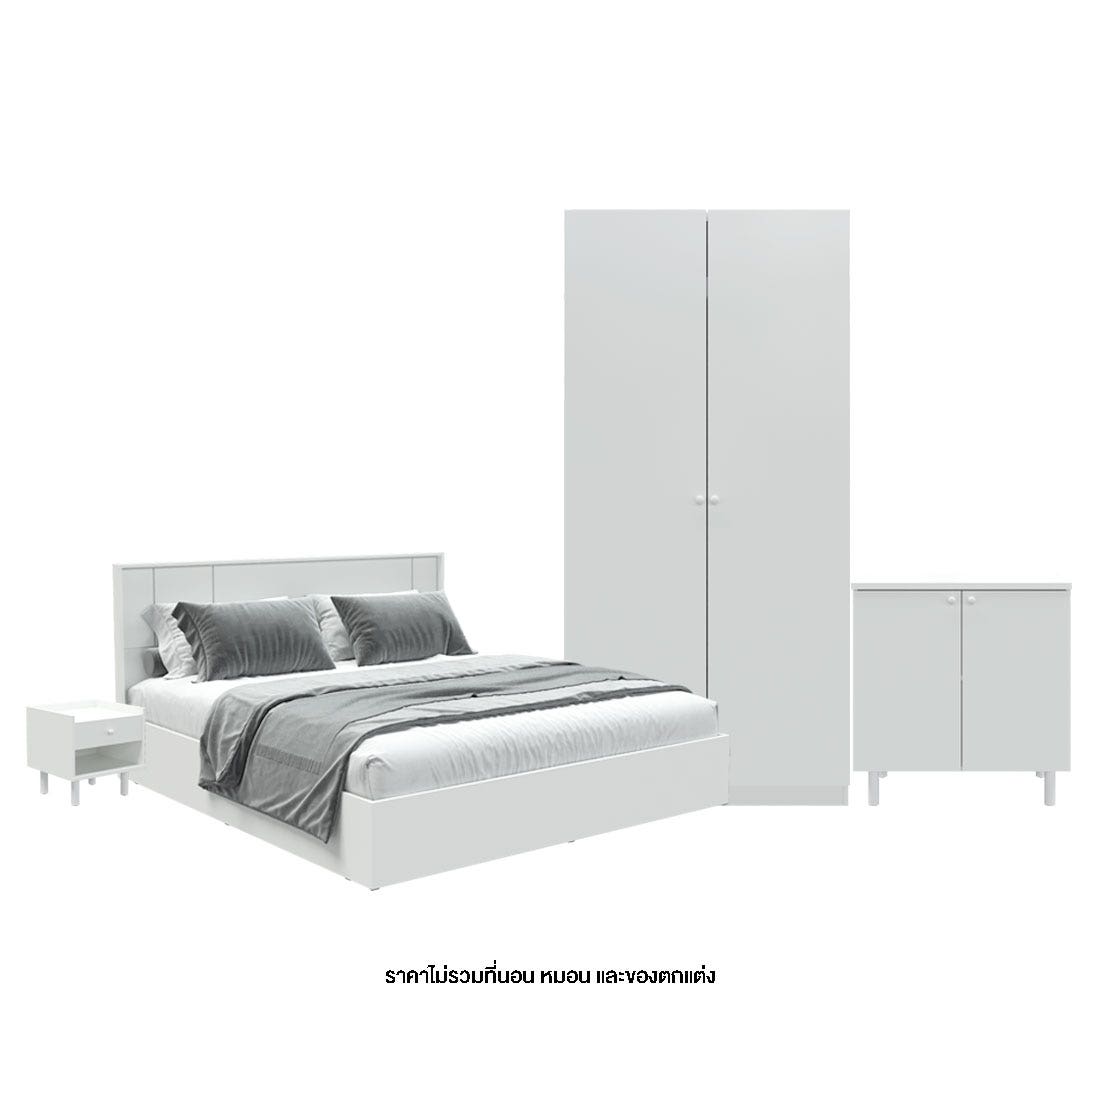 ชุดห้องนอน 6 ฟุต รุ่น Pearliz & ตู้เตี้ย & ตู้ข้างเตียง สีขาว01